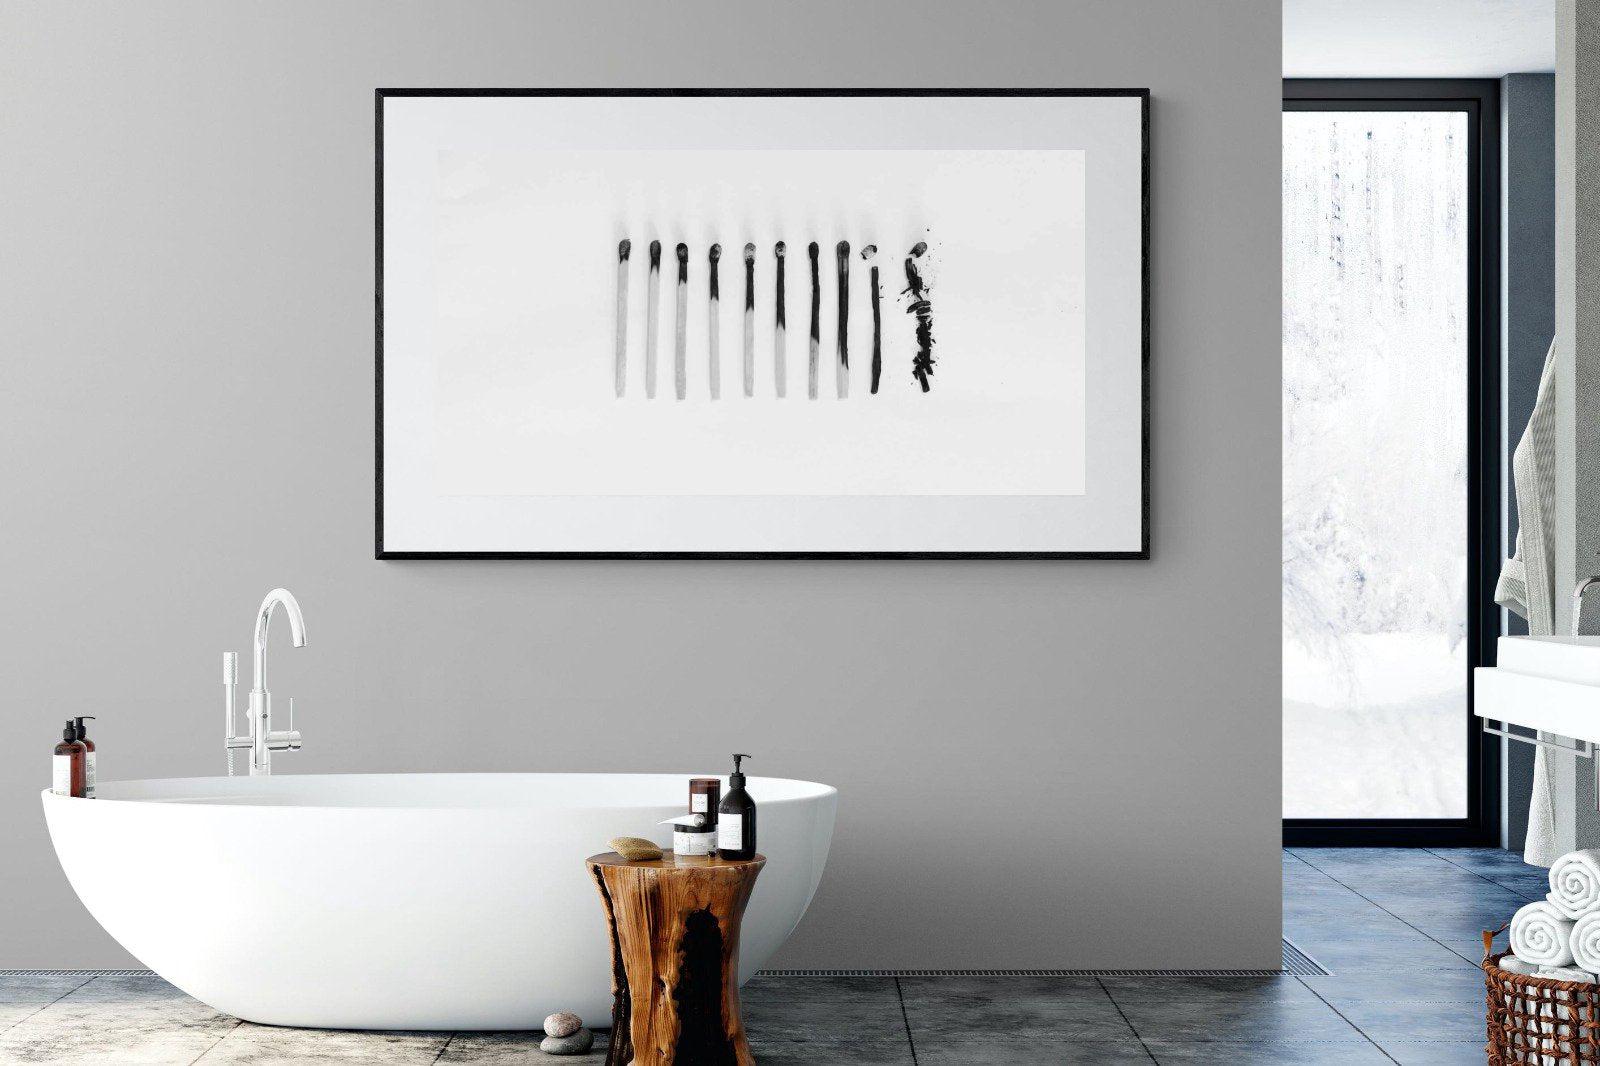 Matchsticks-Wall_Art-180 x 110cm-Framed Print-Black-Pixalot